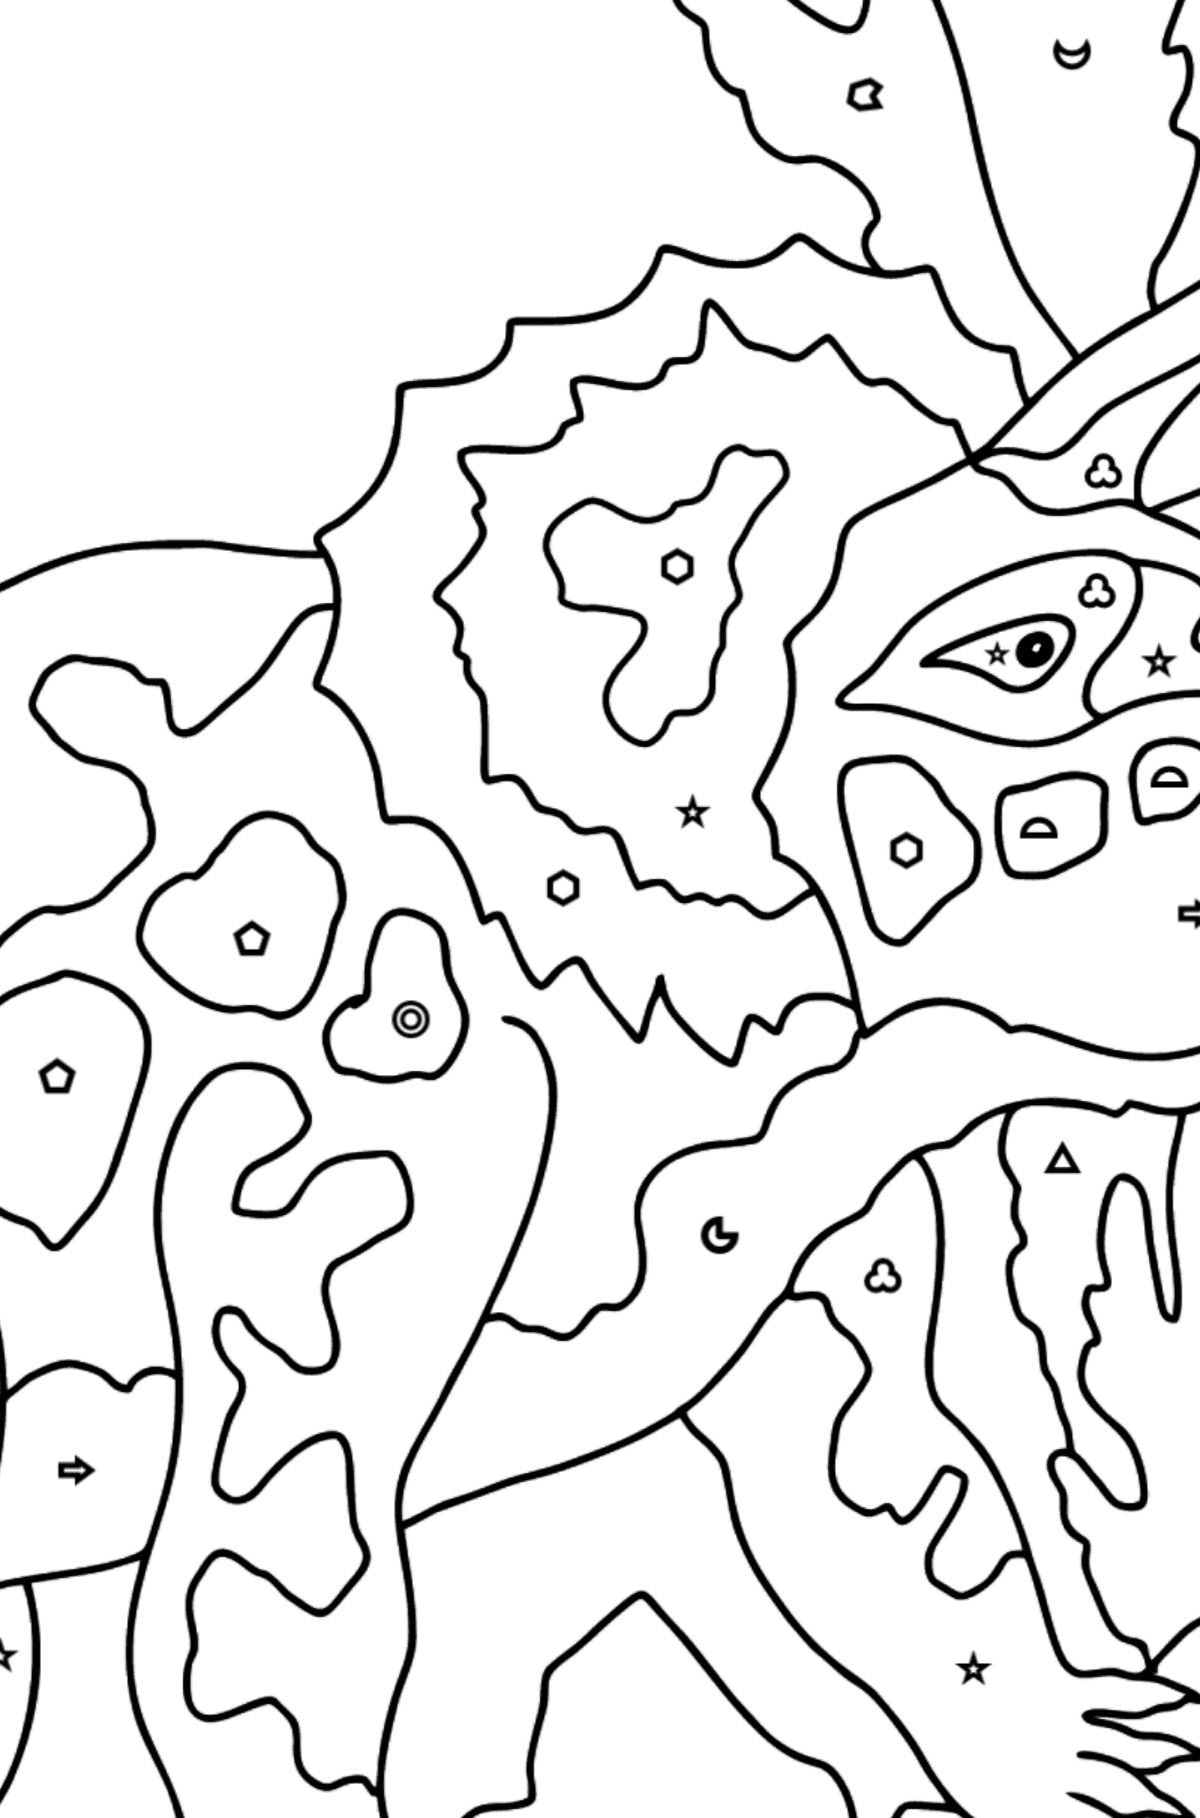 Desenho para colorir de triceratops (difícil) - Colorir por Formas Geométricas para Crianças